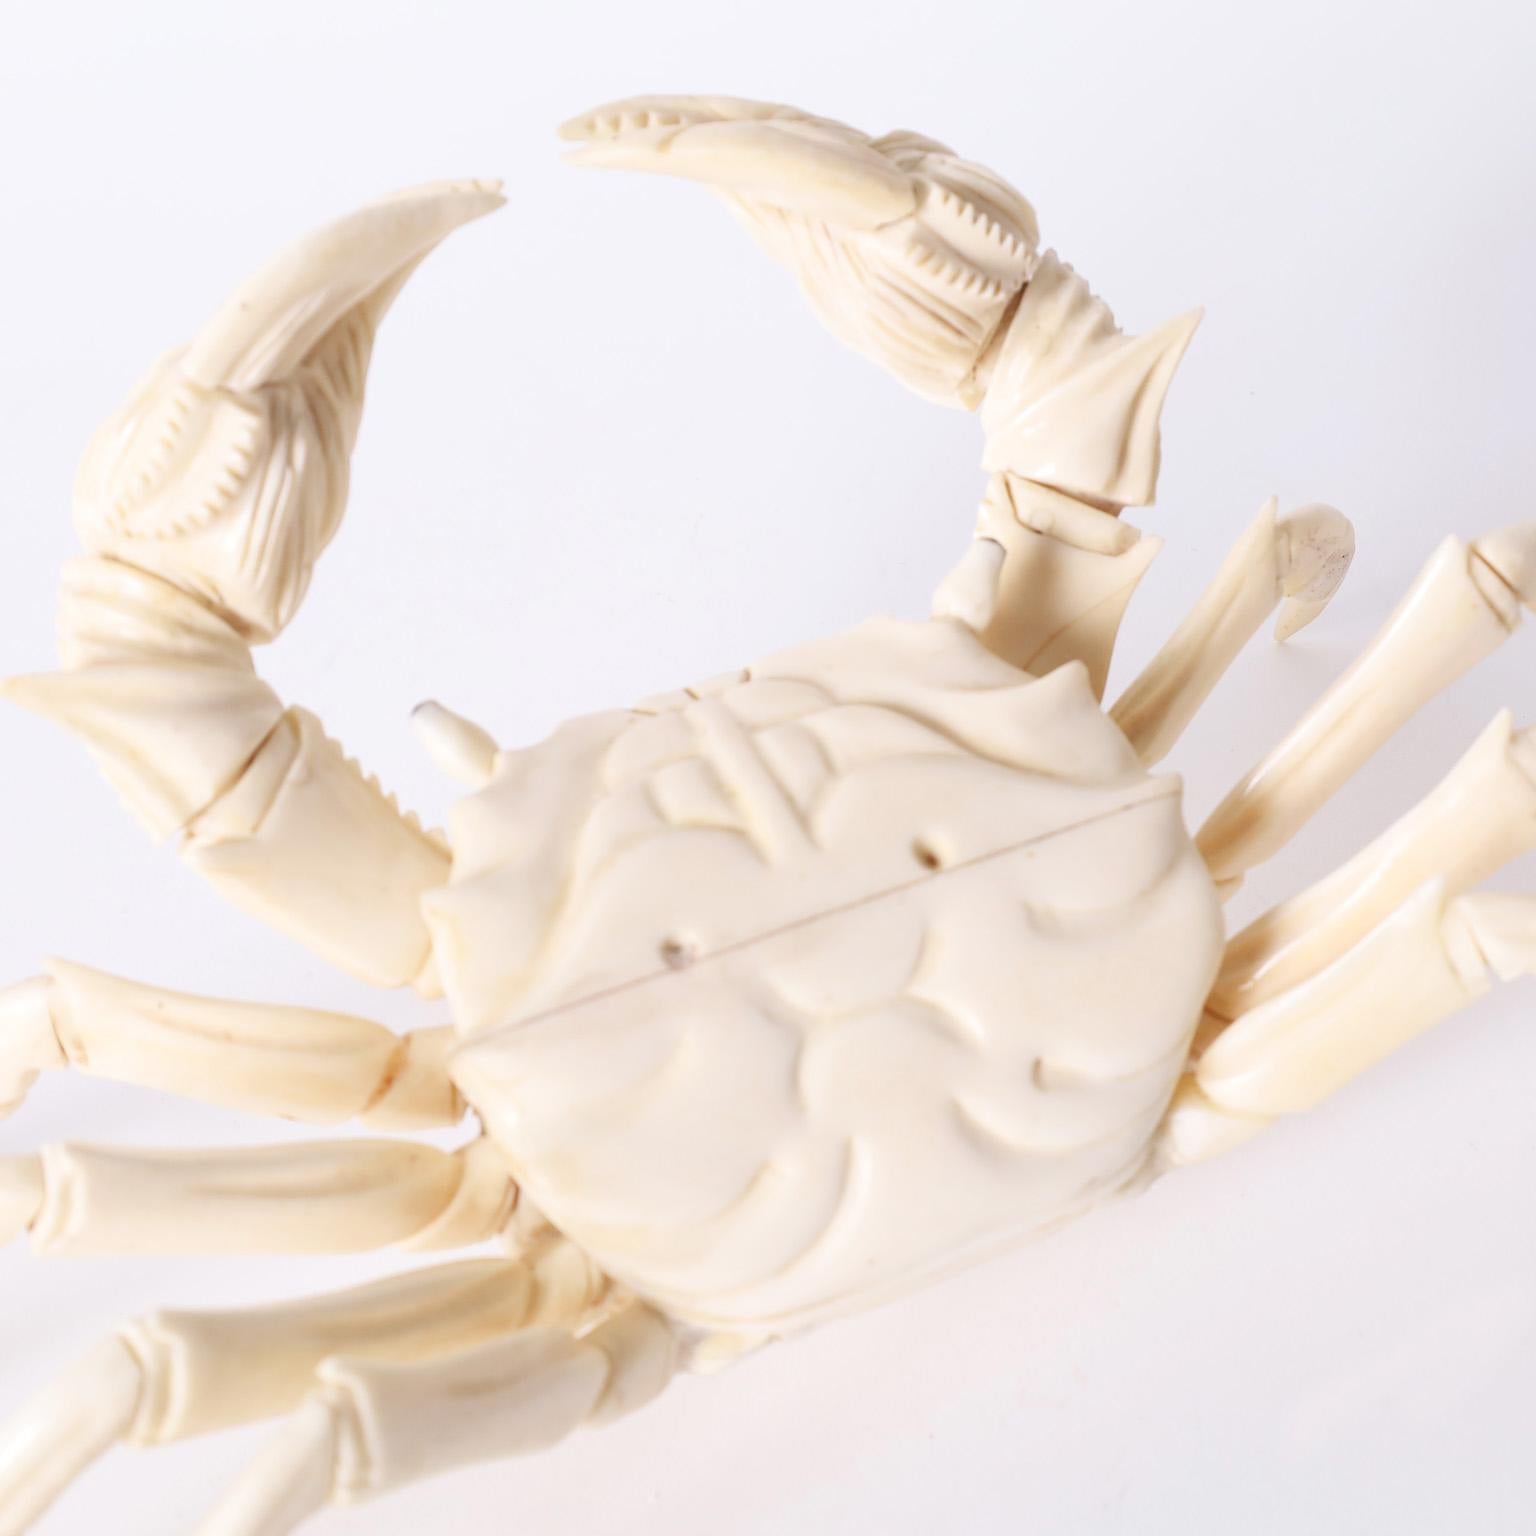 Bemerkenswerte Krabbenskulptur aus geschnitztem Knochen mit erstaunlicher Genauigkeit und vielen beweglichen Teilen.